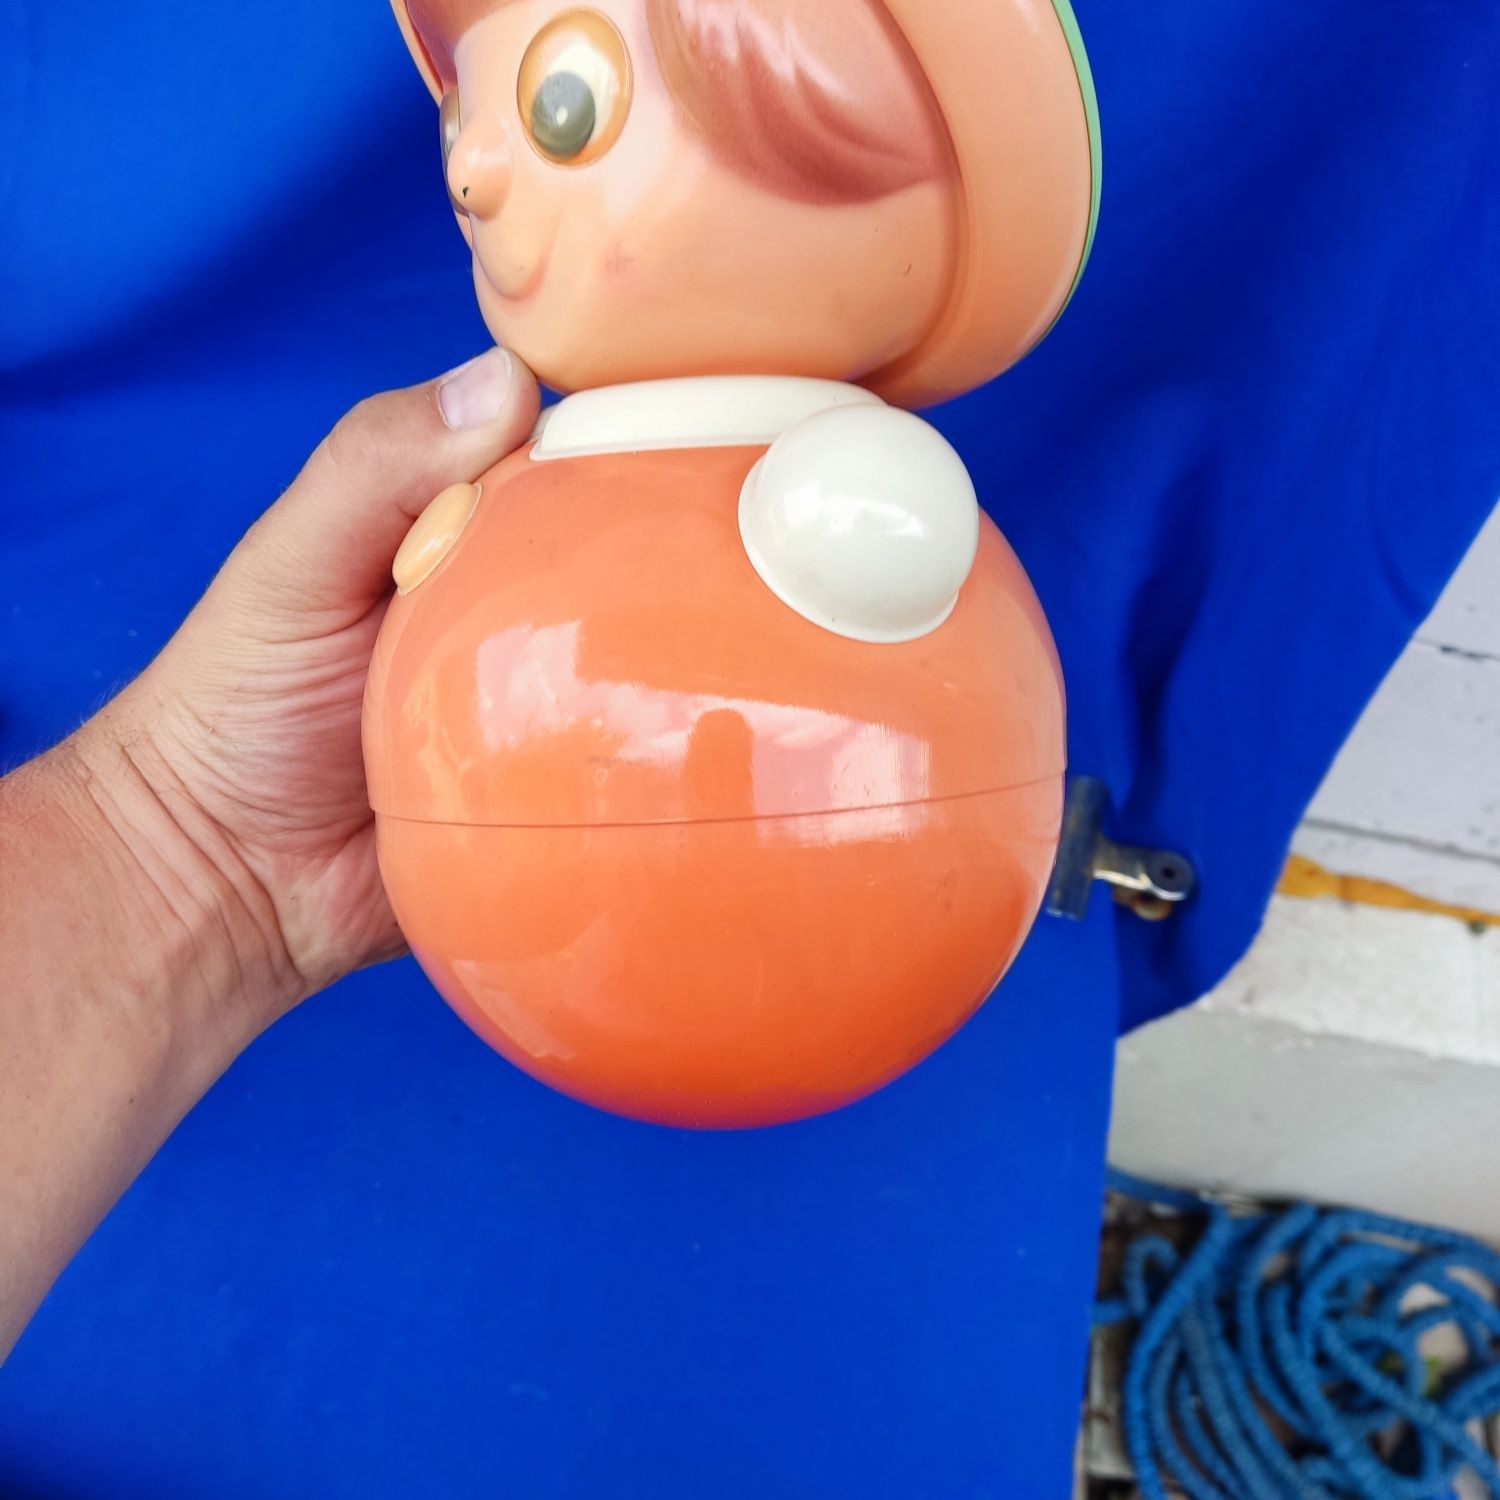 Неваляшка СССР советская игрушка детская кукла